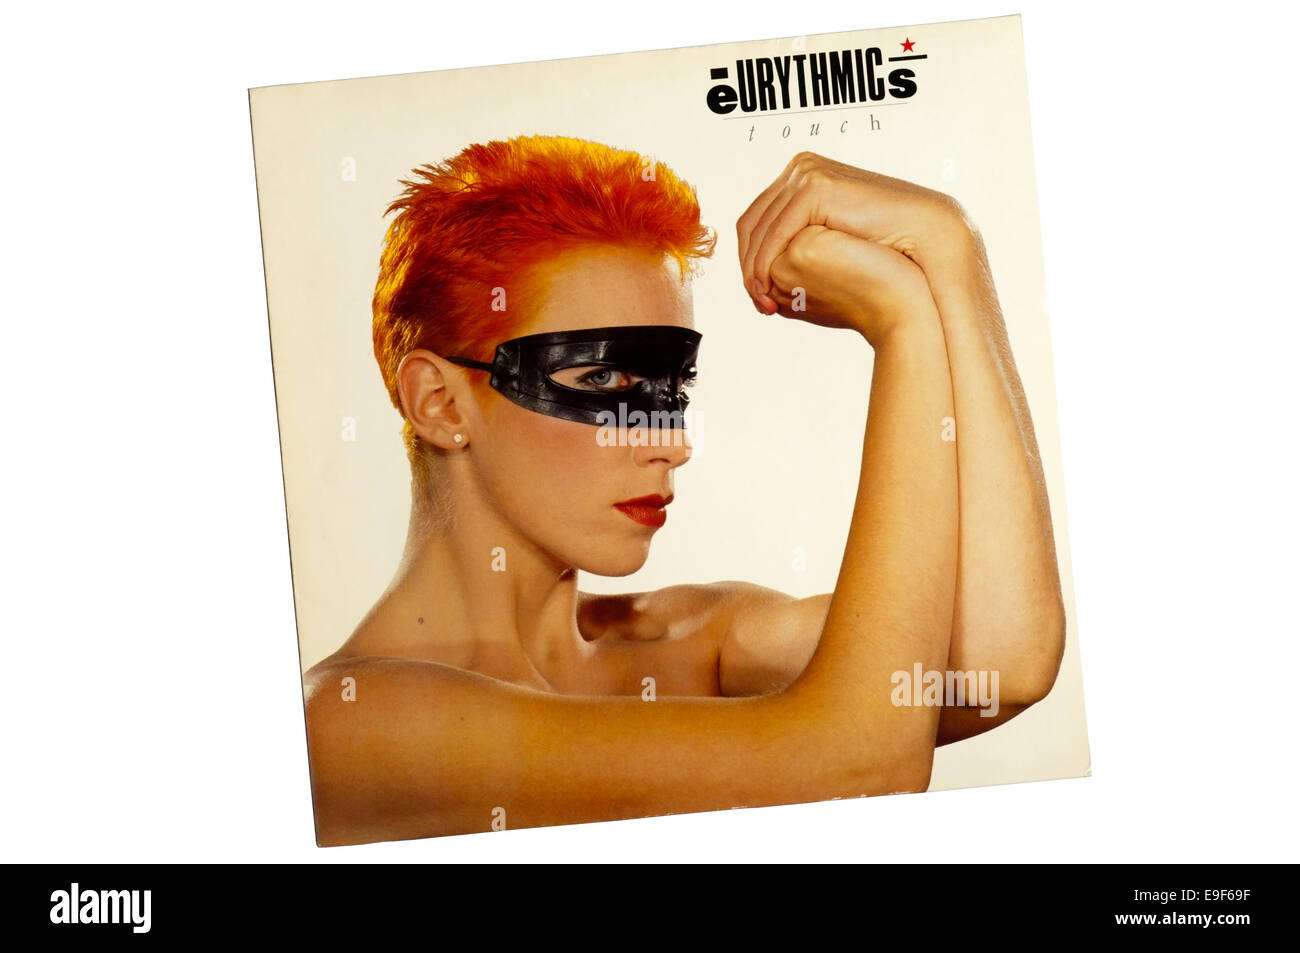 Touch è stato il terzo album in studio da parte della British new wave duo degli Eurythmics, rilasciato nel 1983. Foto Stock